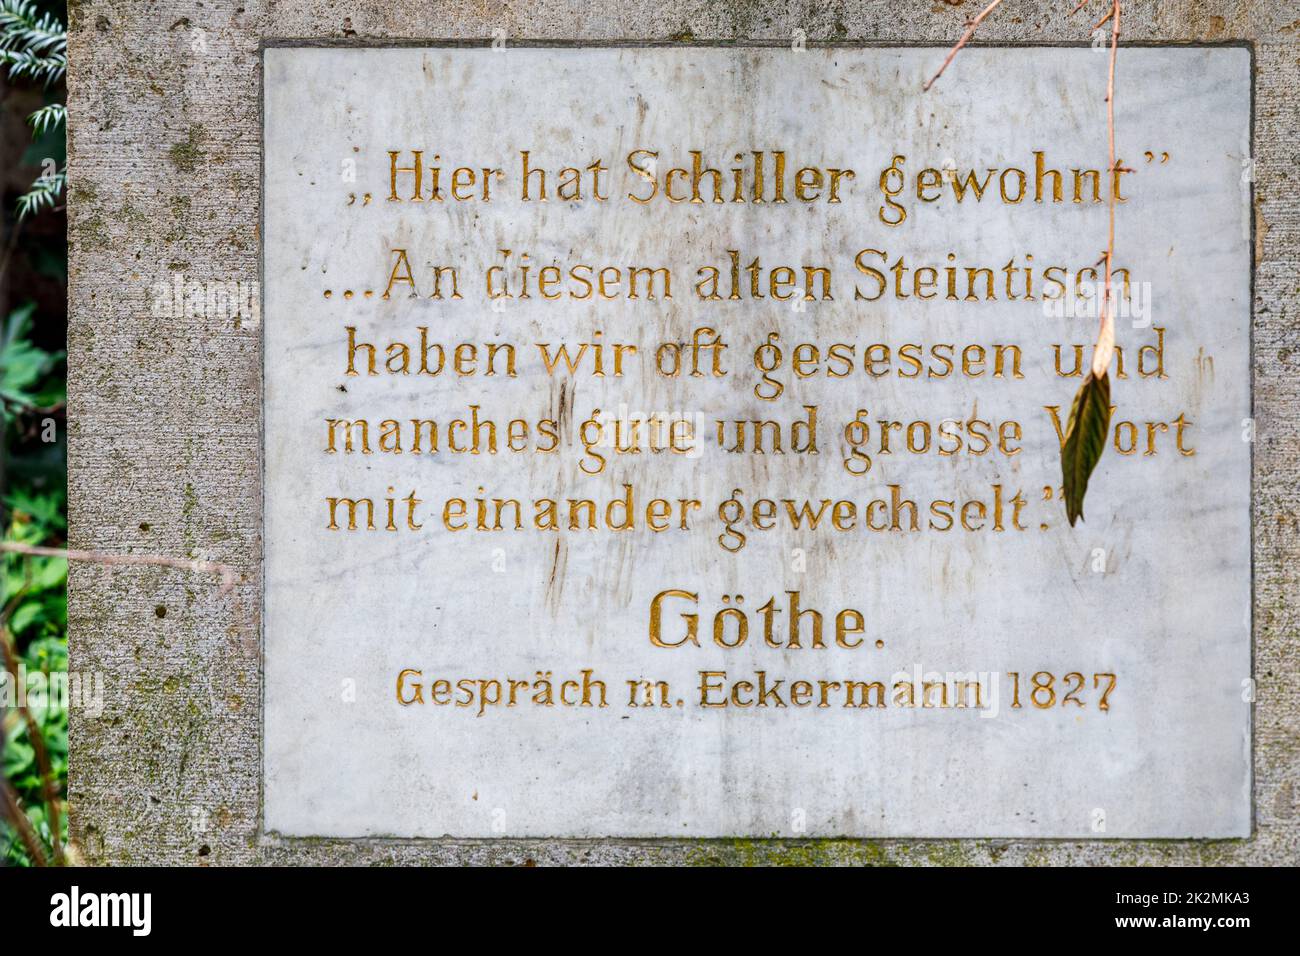 Inschrift eines Zitats von Goethe, die Gartenzinne auf dem Gelände von Schillers Gartenhaus betreffend Stock Photo